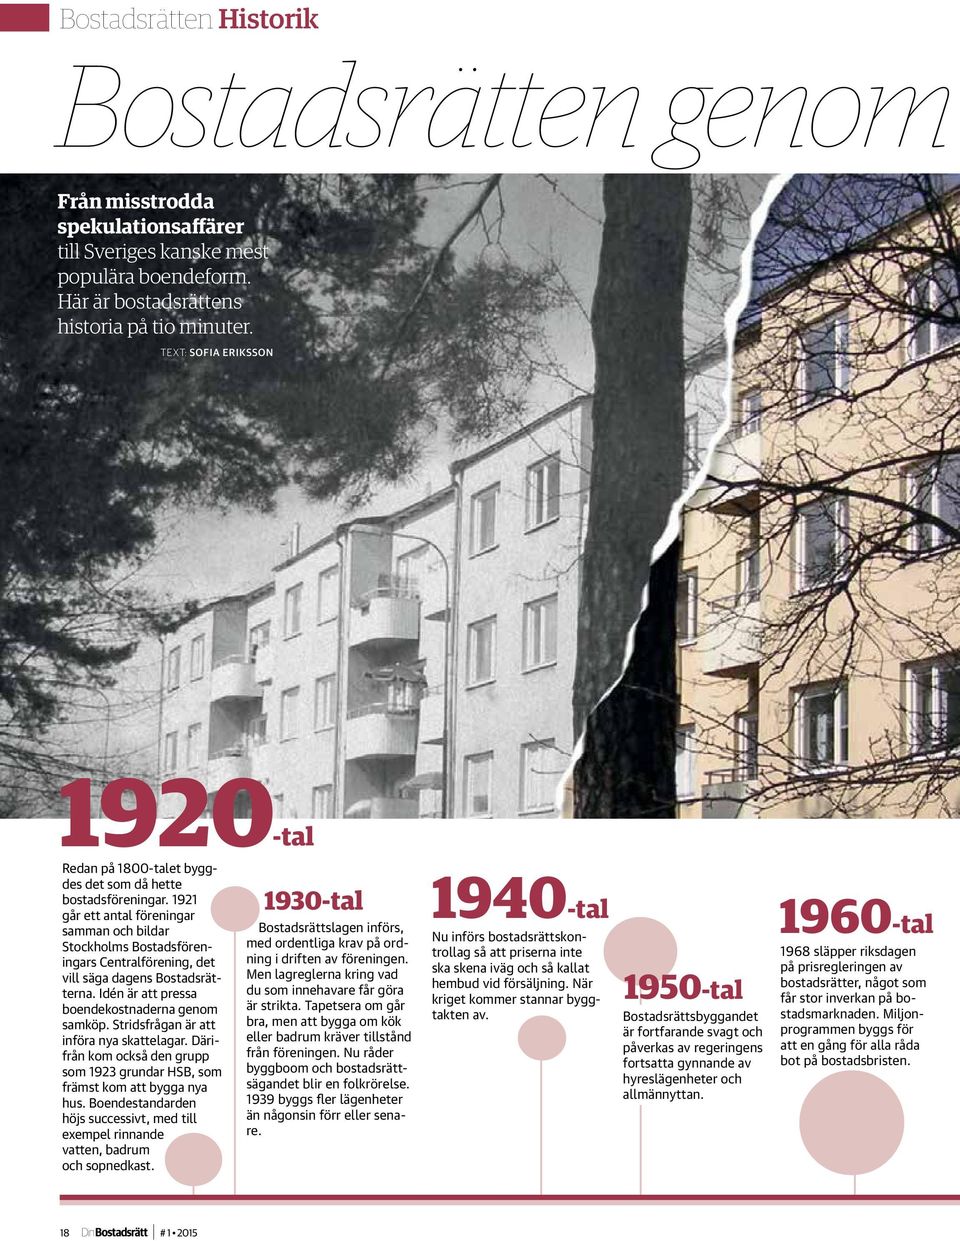 1921 går ett antal föreningar samman och bildar Stockholms Bostadsföreningars Centralförening, det vill säga dagens Bostadsrätterna. Idén är att pressa boendekostnaderna genom samköp.